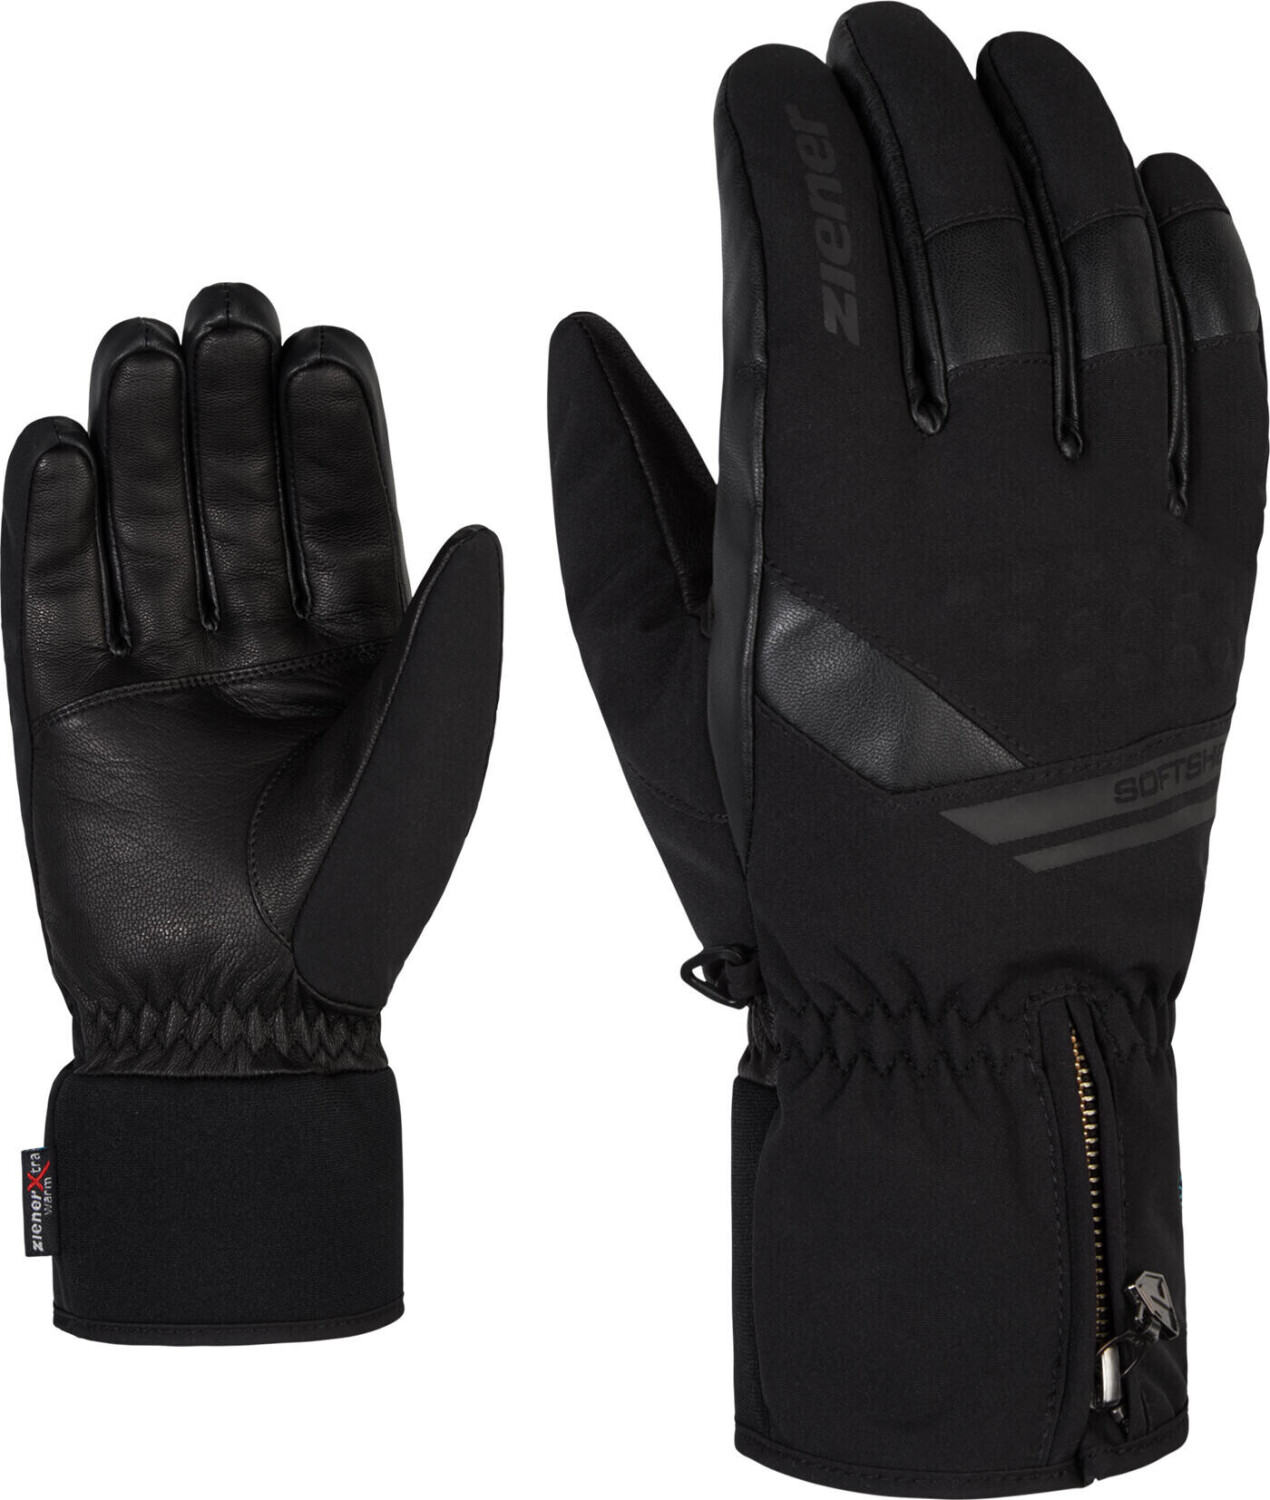 bei Goman | Ziener ab Ski PR Preisvergleich € ASR (801080) 53,59 Alpine black Glove